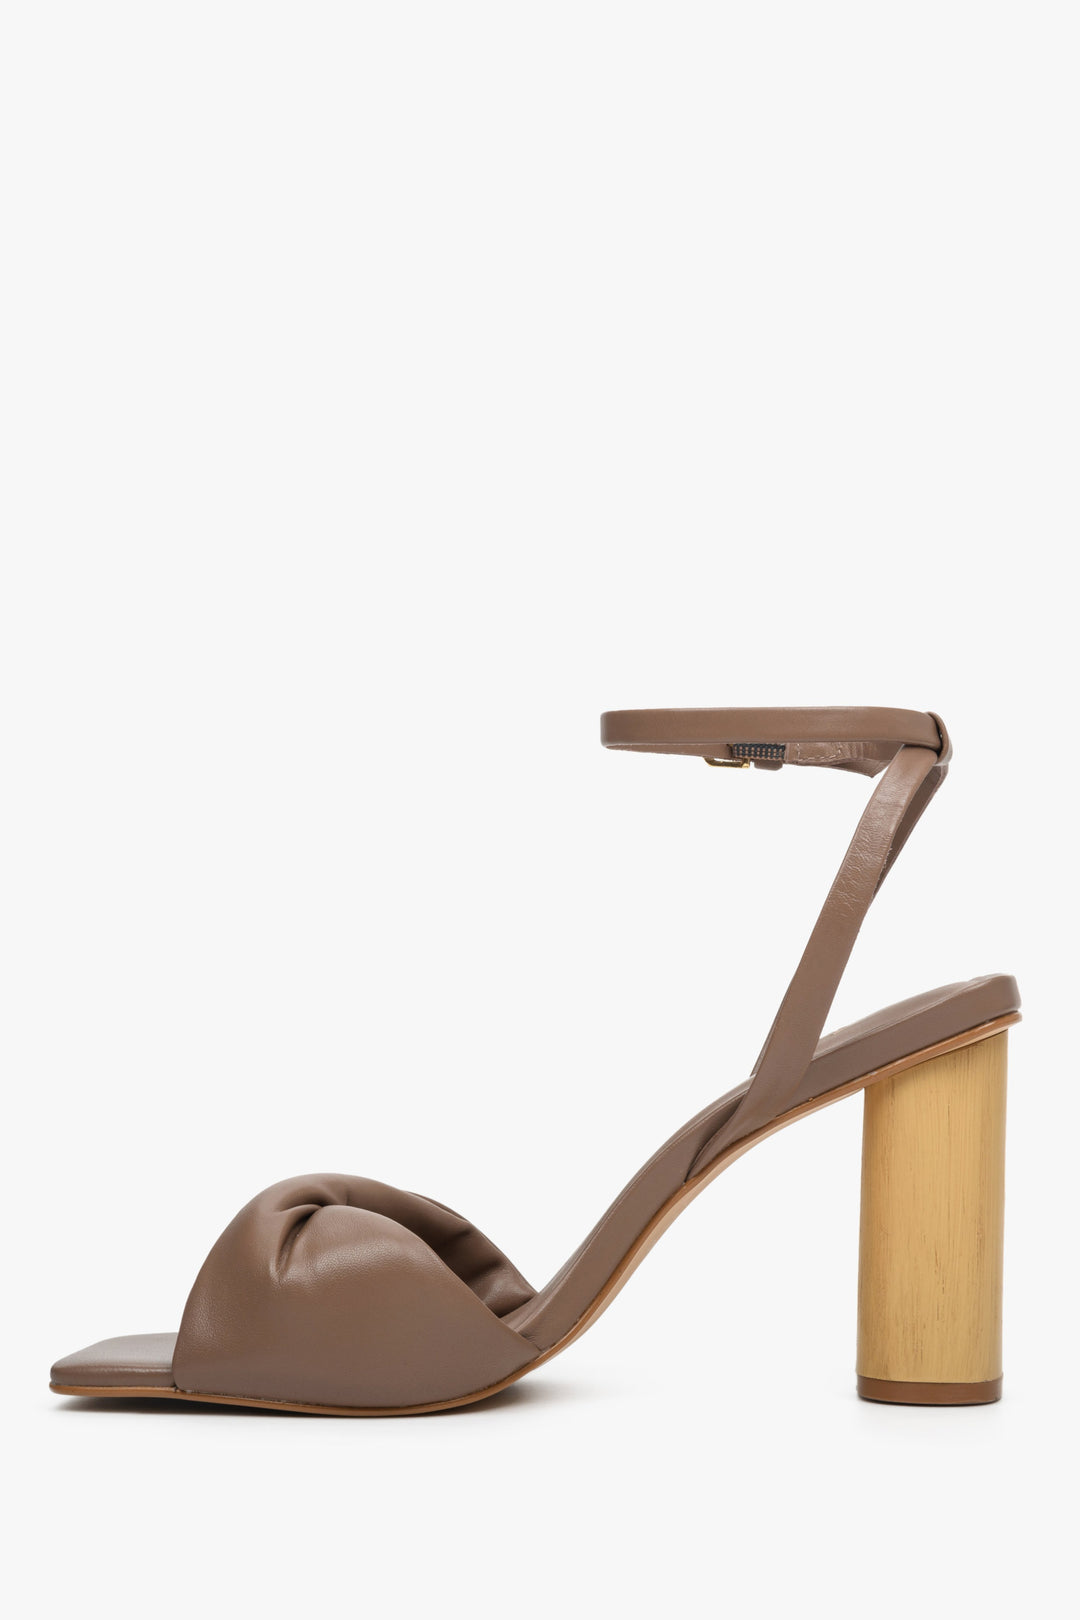 Damskie, skórzane sandały w kolorze brązowym na stabilnym słupku - profil buta.